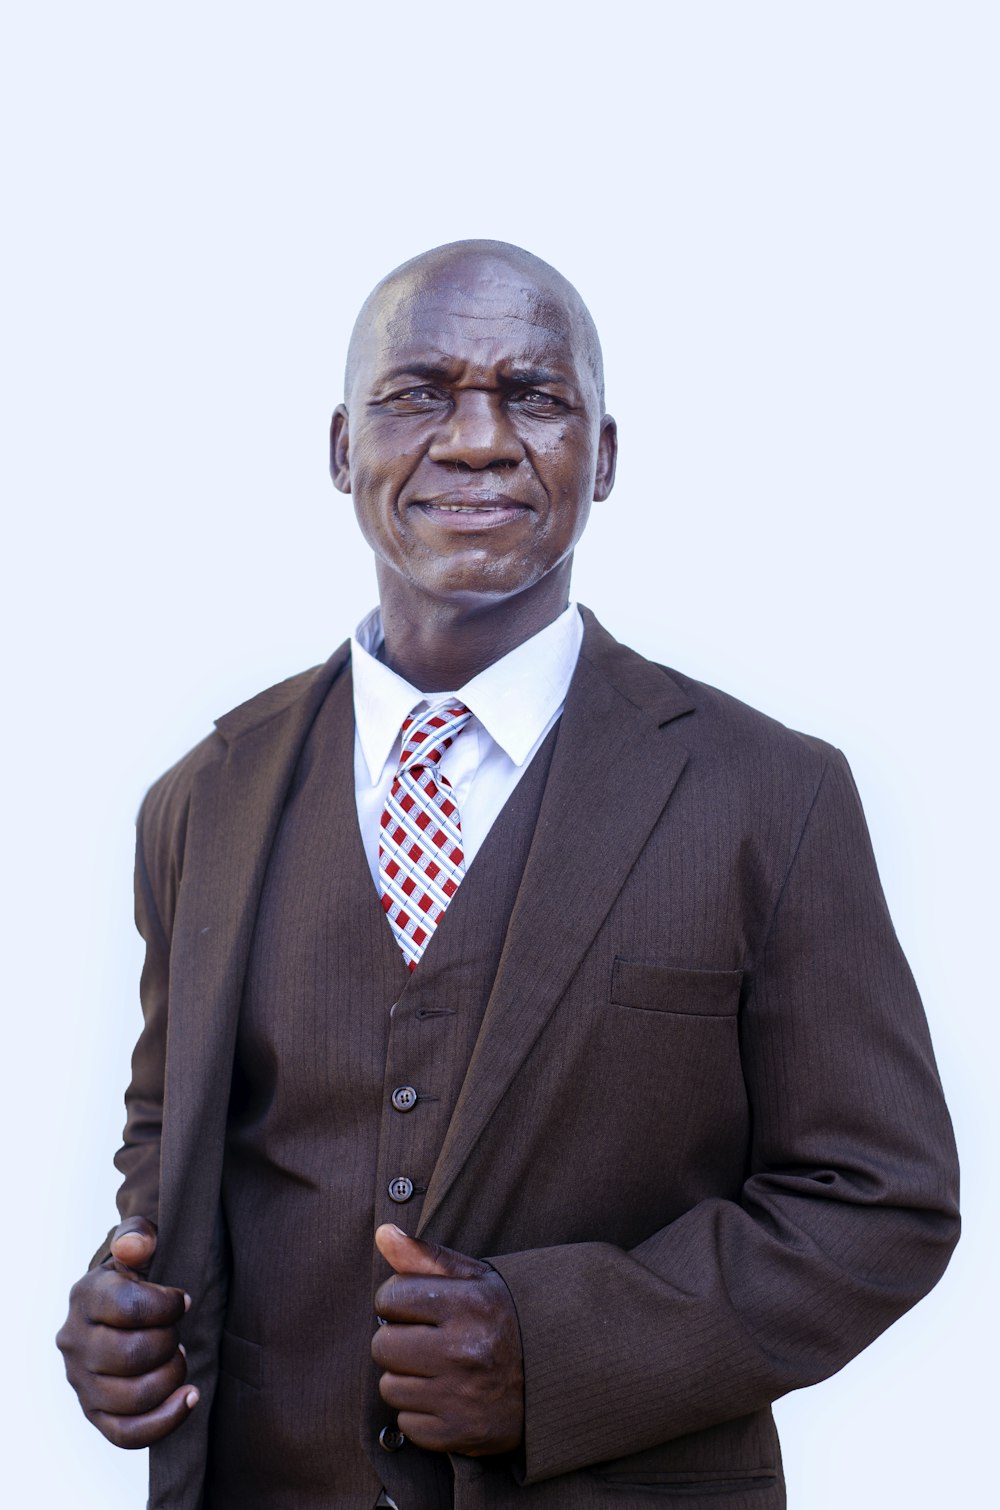 Un hombre con traje y corbata posando para una foto